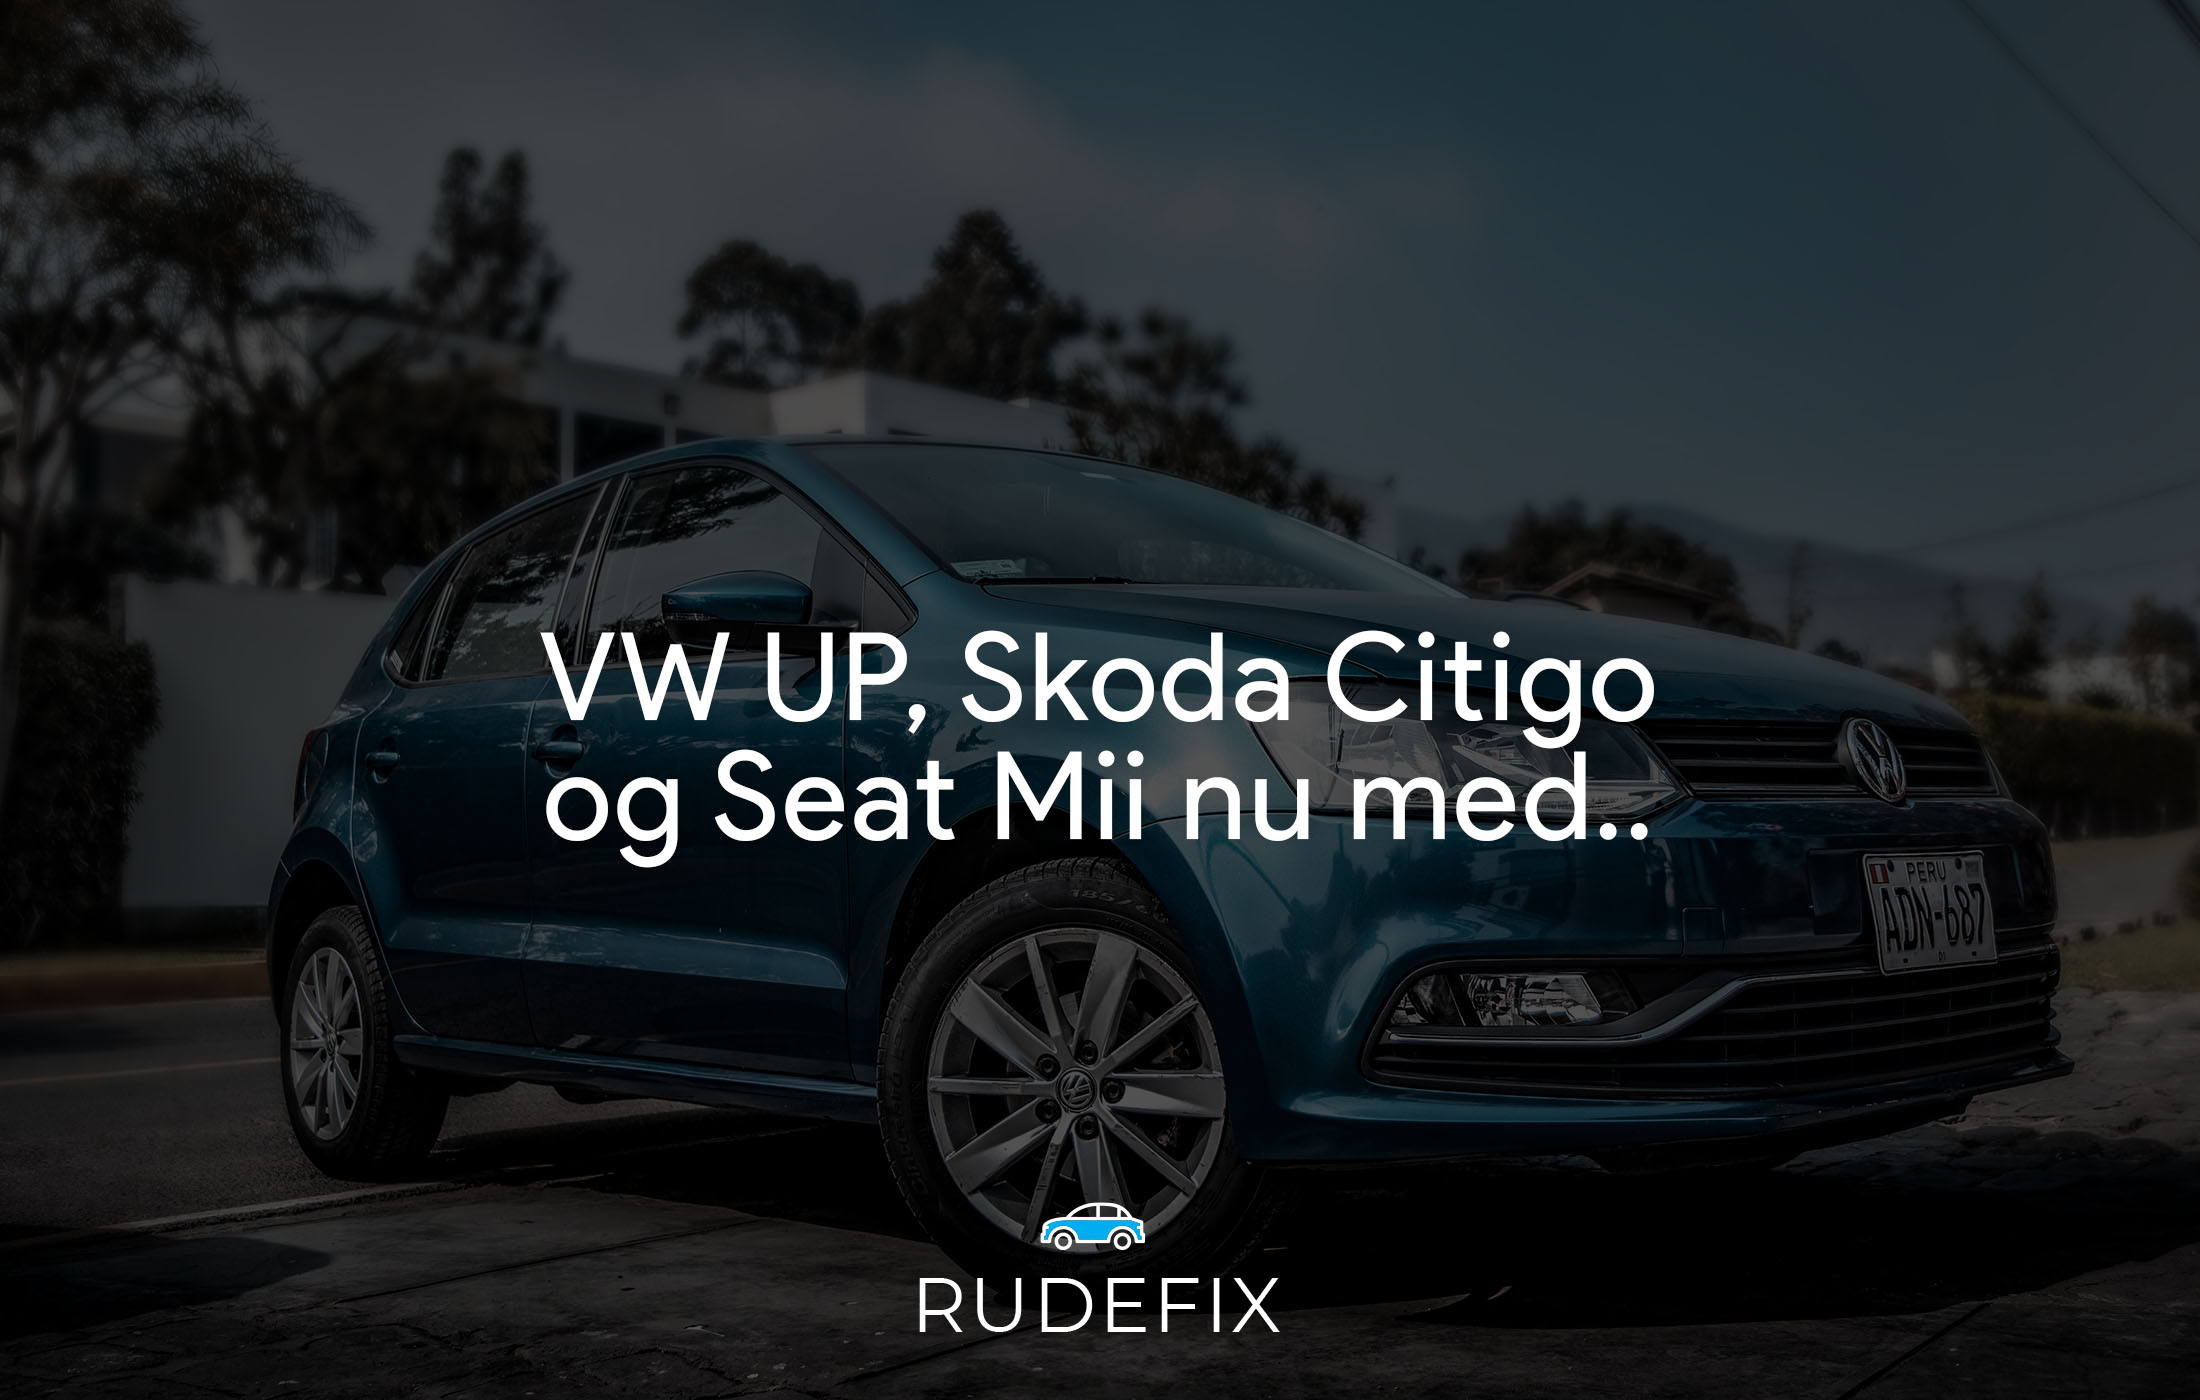 VW UP, Skoda Citigo og Seat Mii